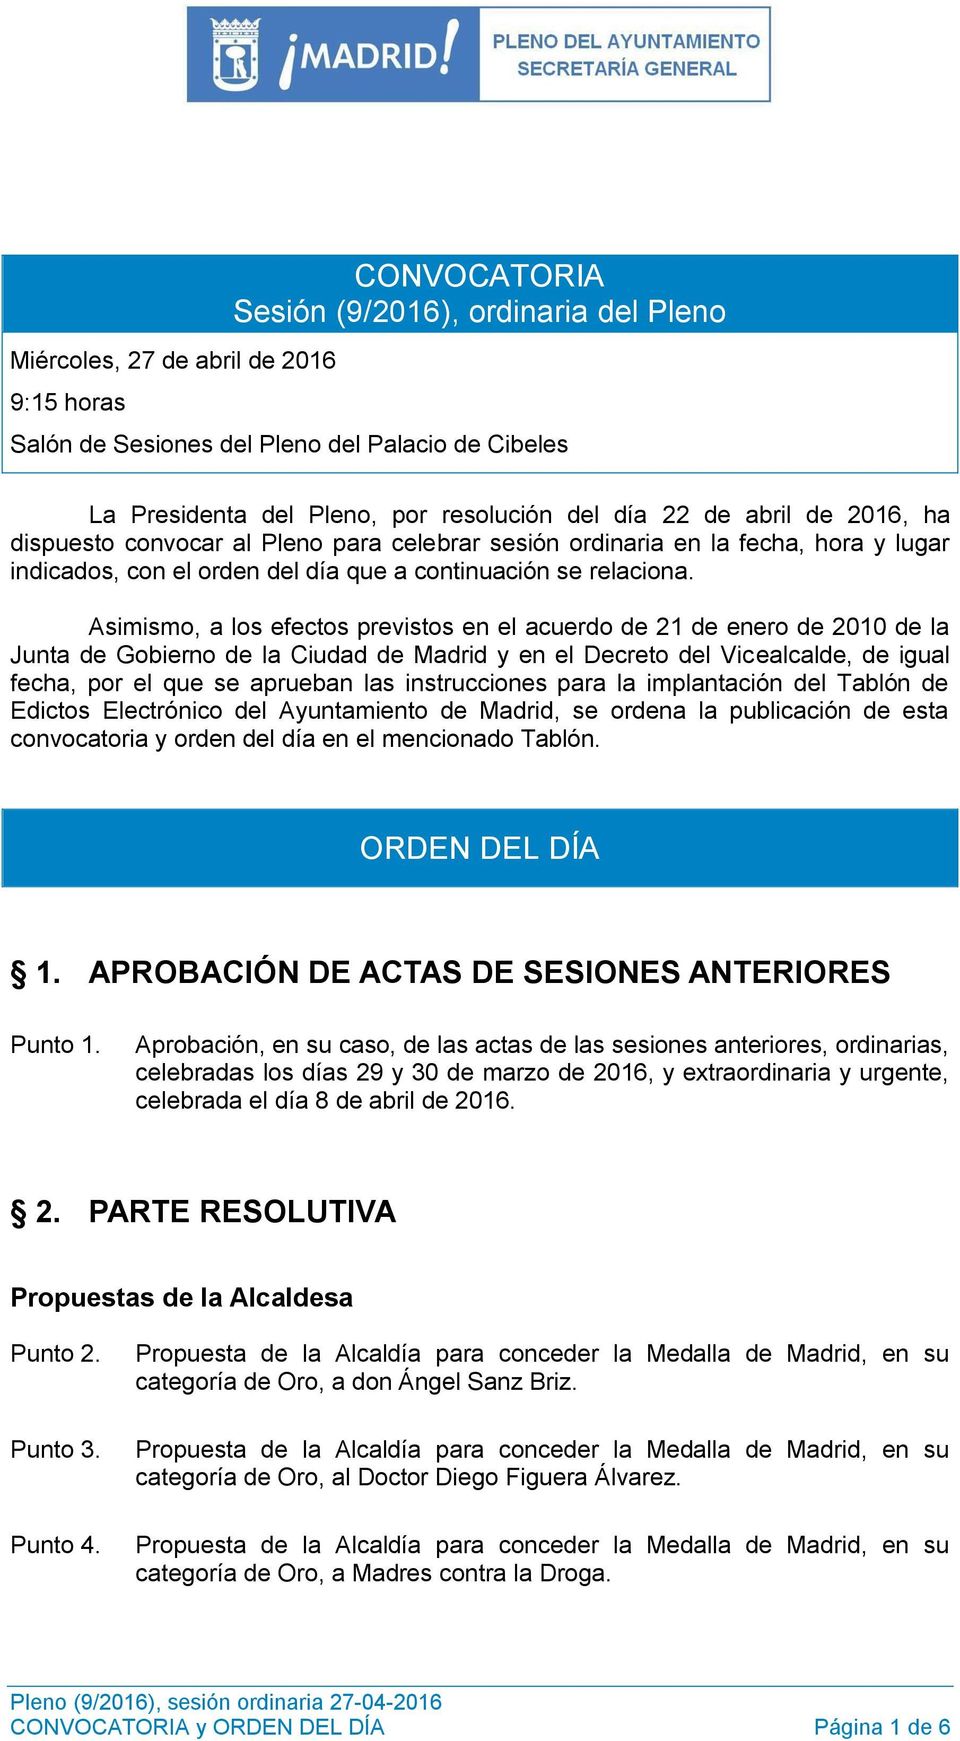 Asimismo, a los efectos previstos en el acuerdo de 21 de enero de 2010 de la Junta de Gobierno de la Ciudad de Madrid y en el Decreto del Vicealcalde, de igual fecha, por el que se aprueban las